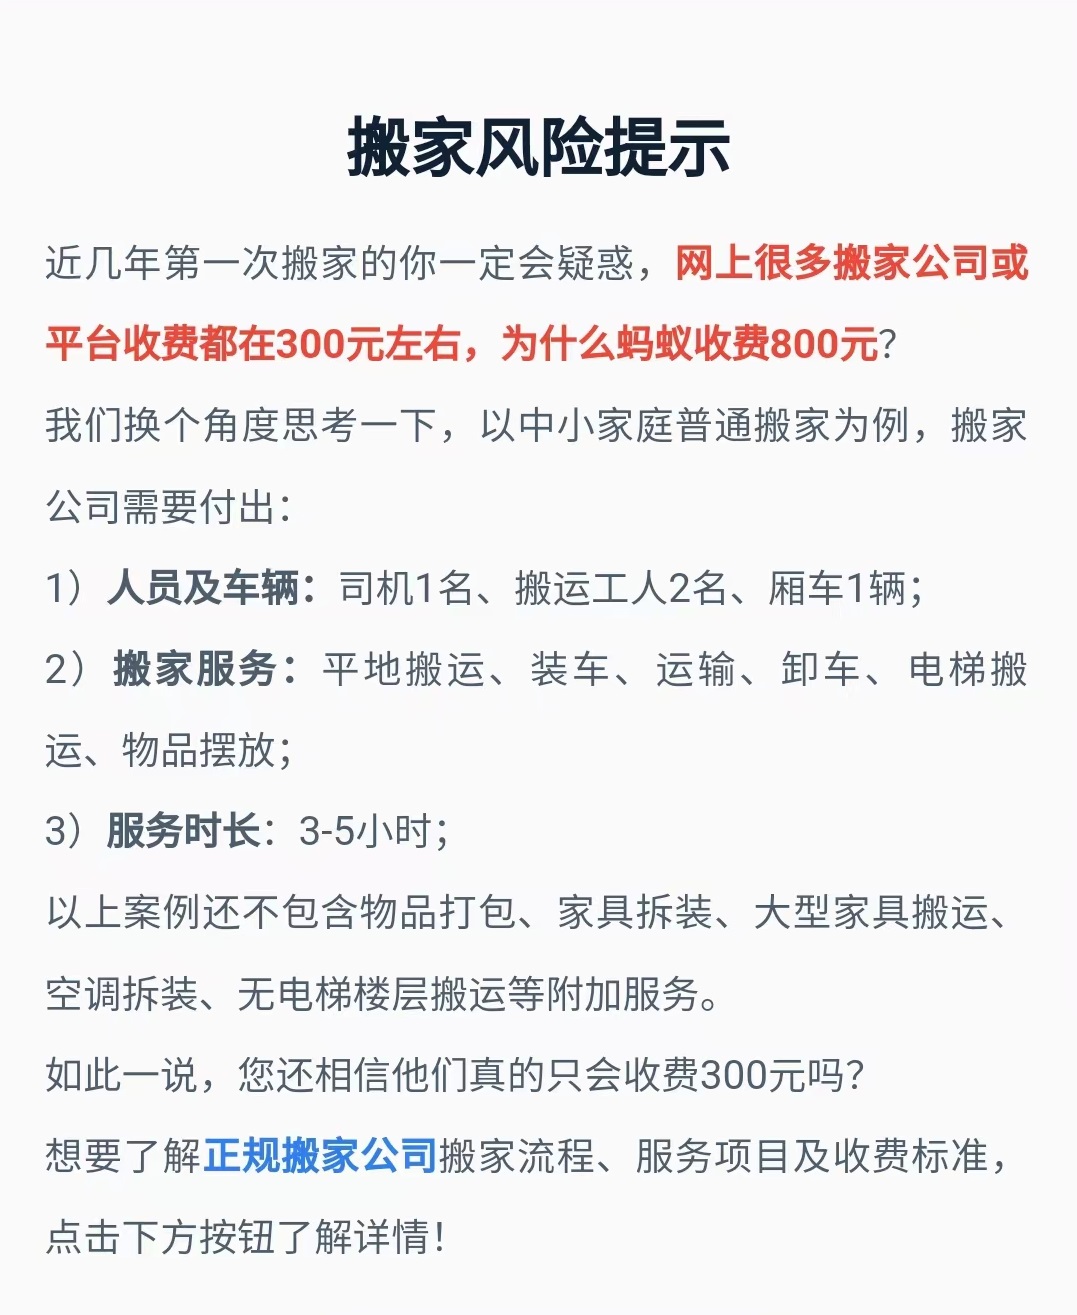 上海搬家客服电话是多少_上海公兴搬家电话号码几点上班_上海搬家的热线电话